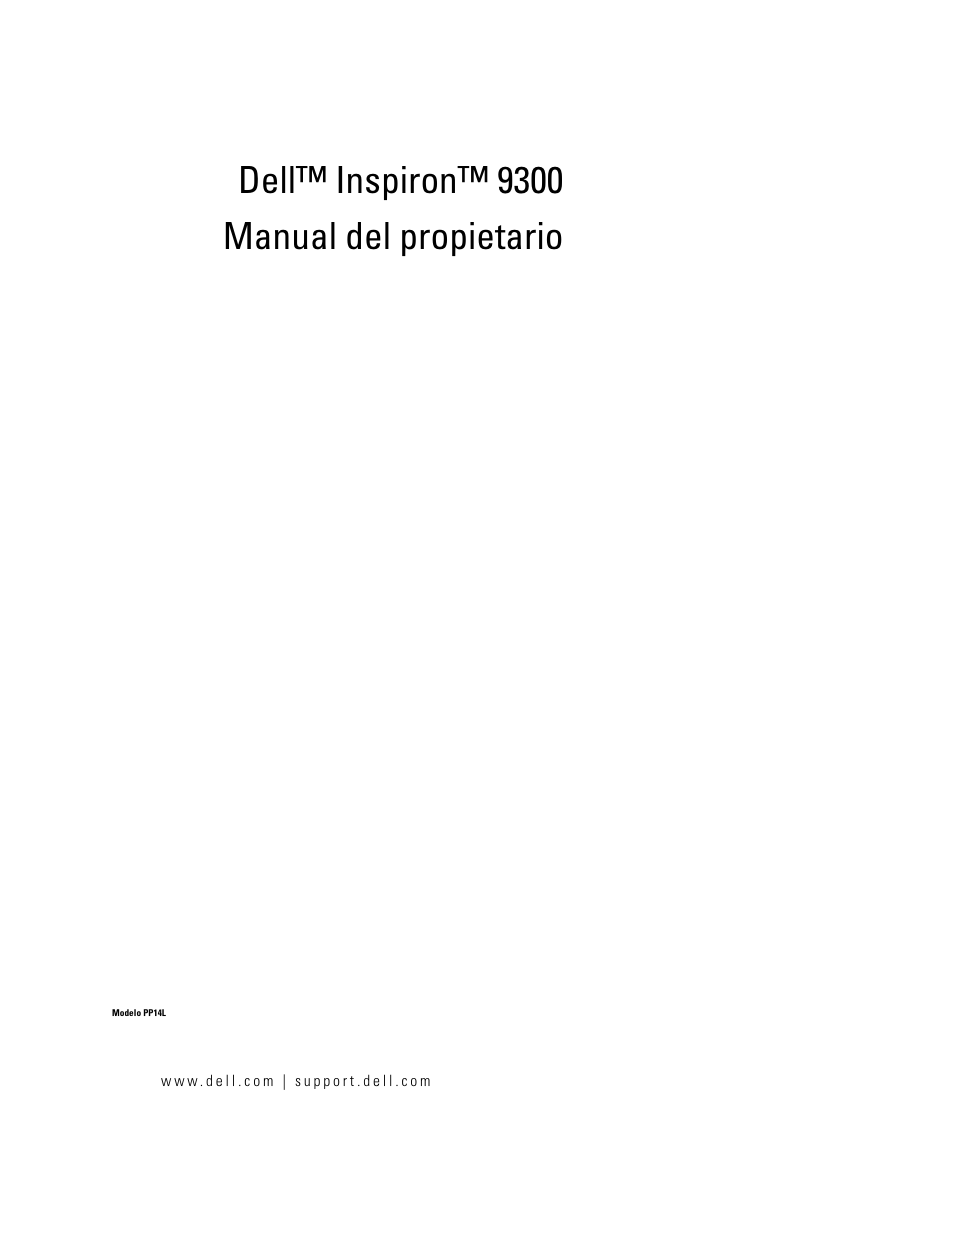 Dell Inspiron 9300 Manual del usuario | Páginas: 136